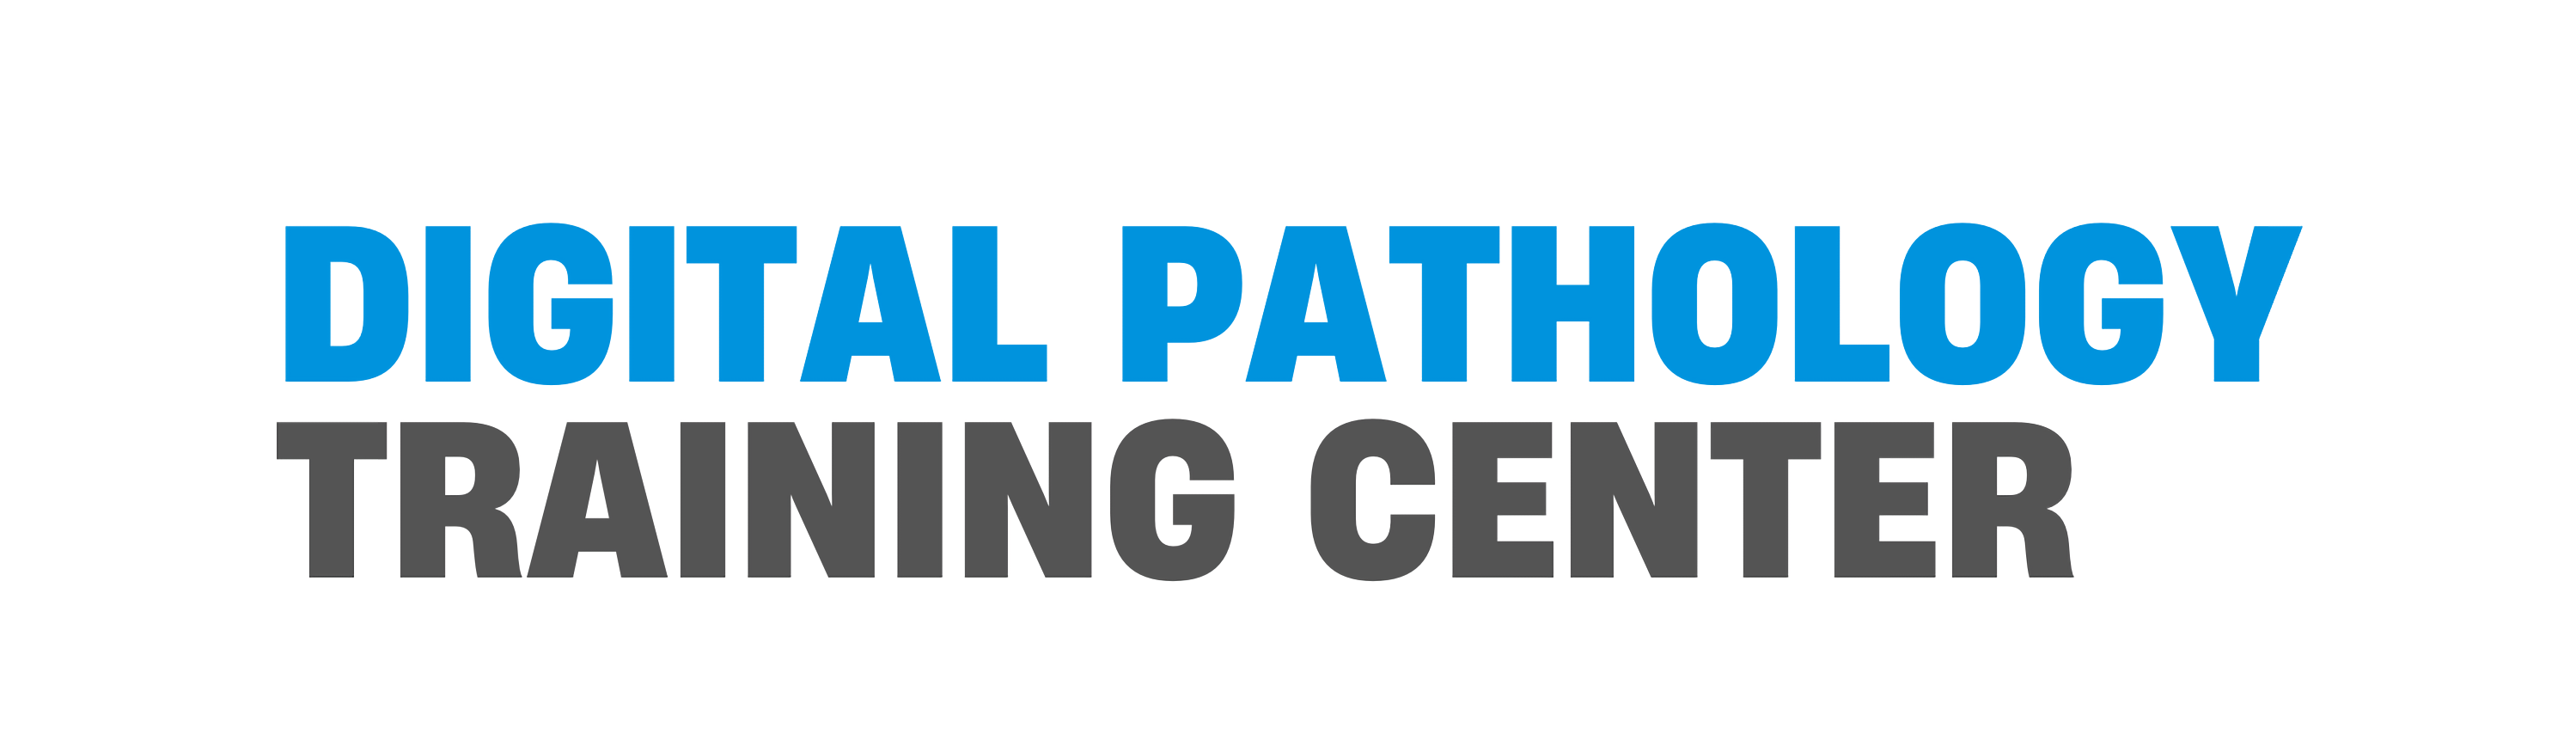 Digital Pathology Training Center